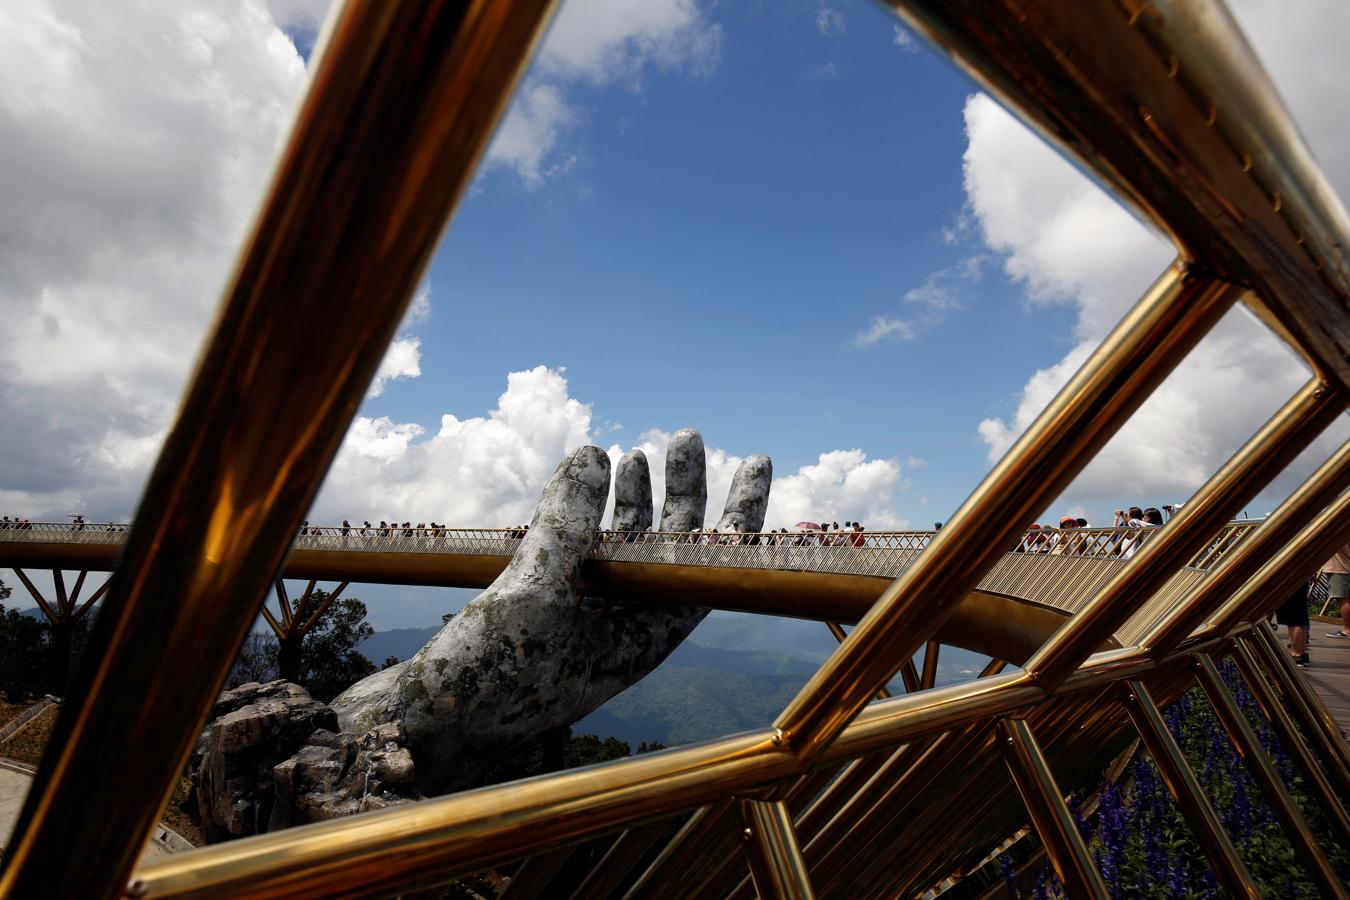 Dos manos gigantes sostienen un nuevo puente en Vietnam. imagen del  nuevo y espectacular puente, apoyado sobre dos manos gigantes. La zona de Ba Na Hills recibió más de 2.7 millones de visitantes el año pasado